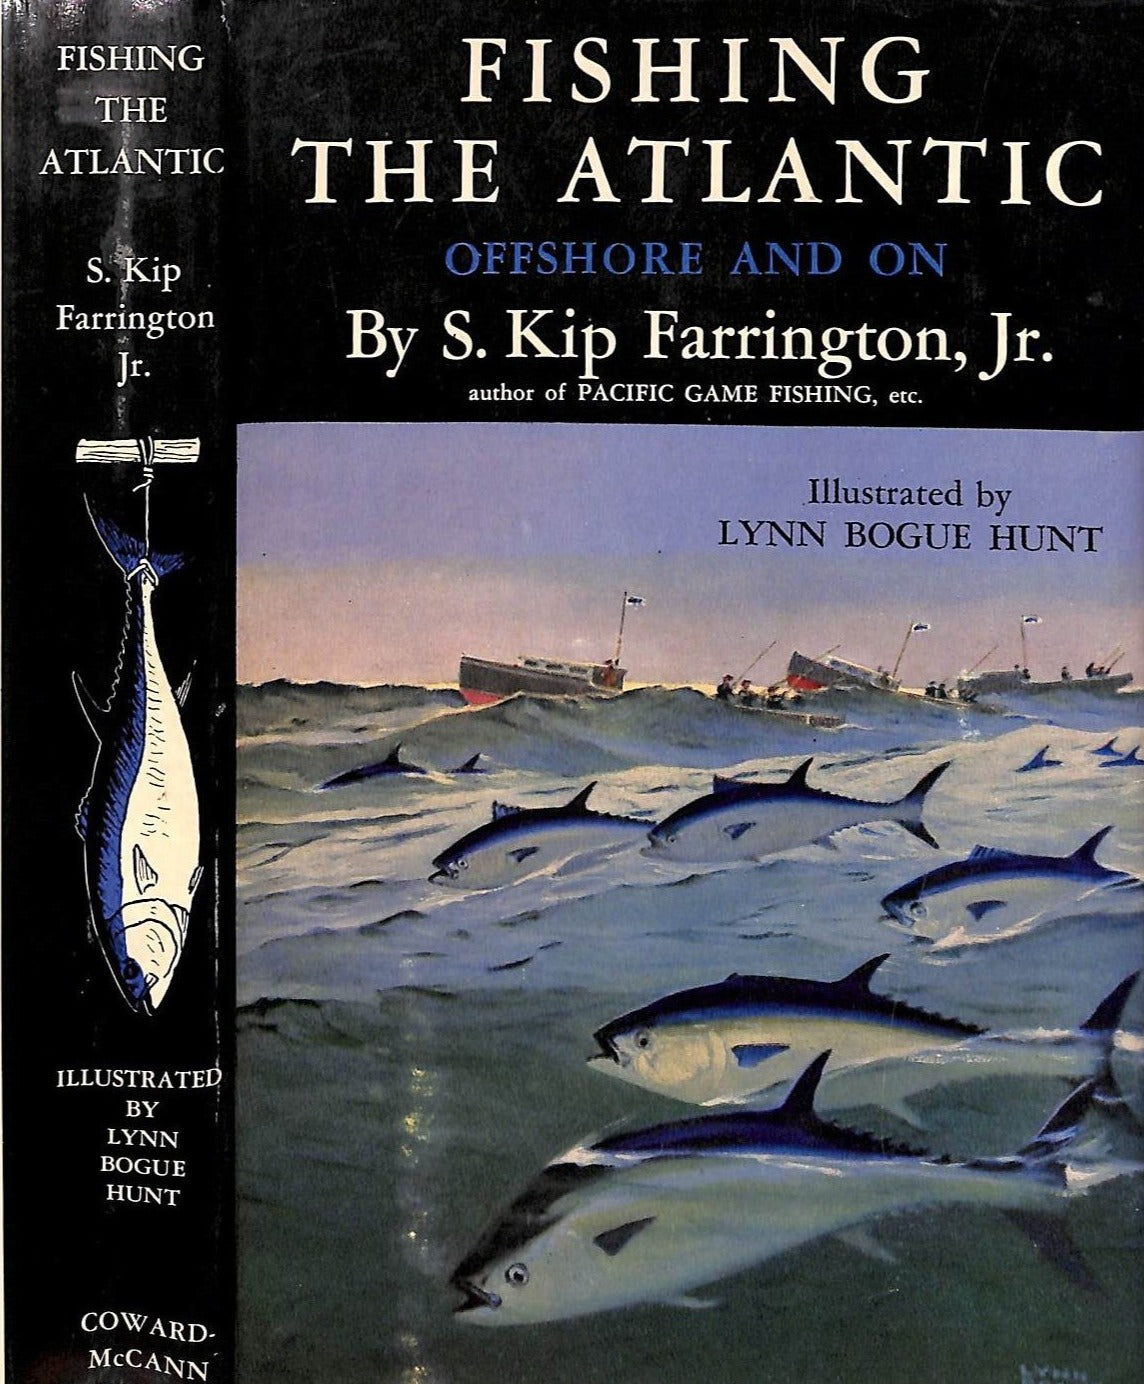 Fishing The Atlantic: Offshore And On 1949 FARRINGTON, S. Kip Jr., 